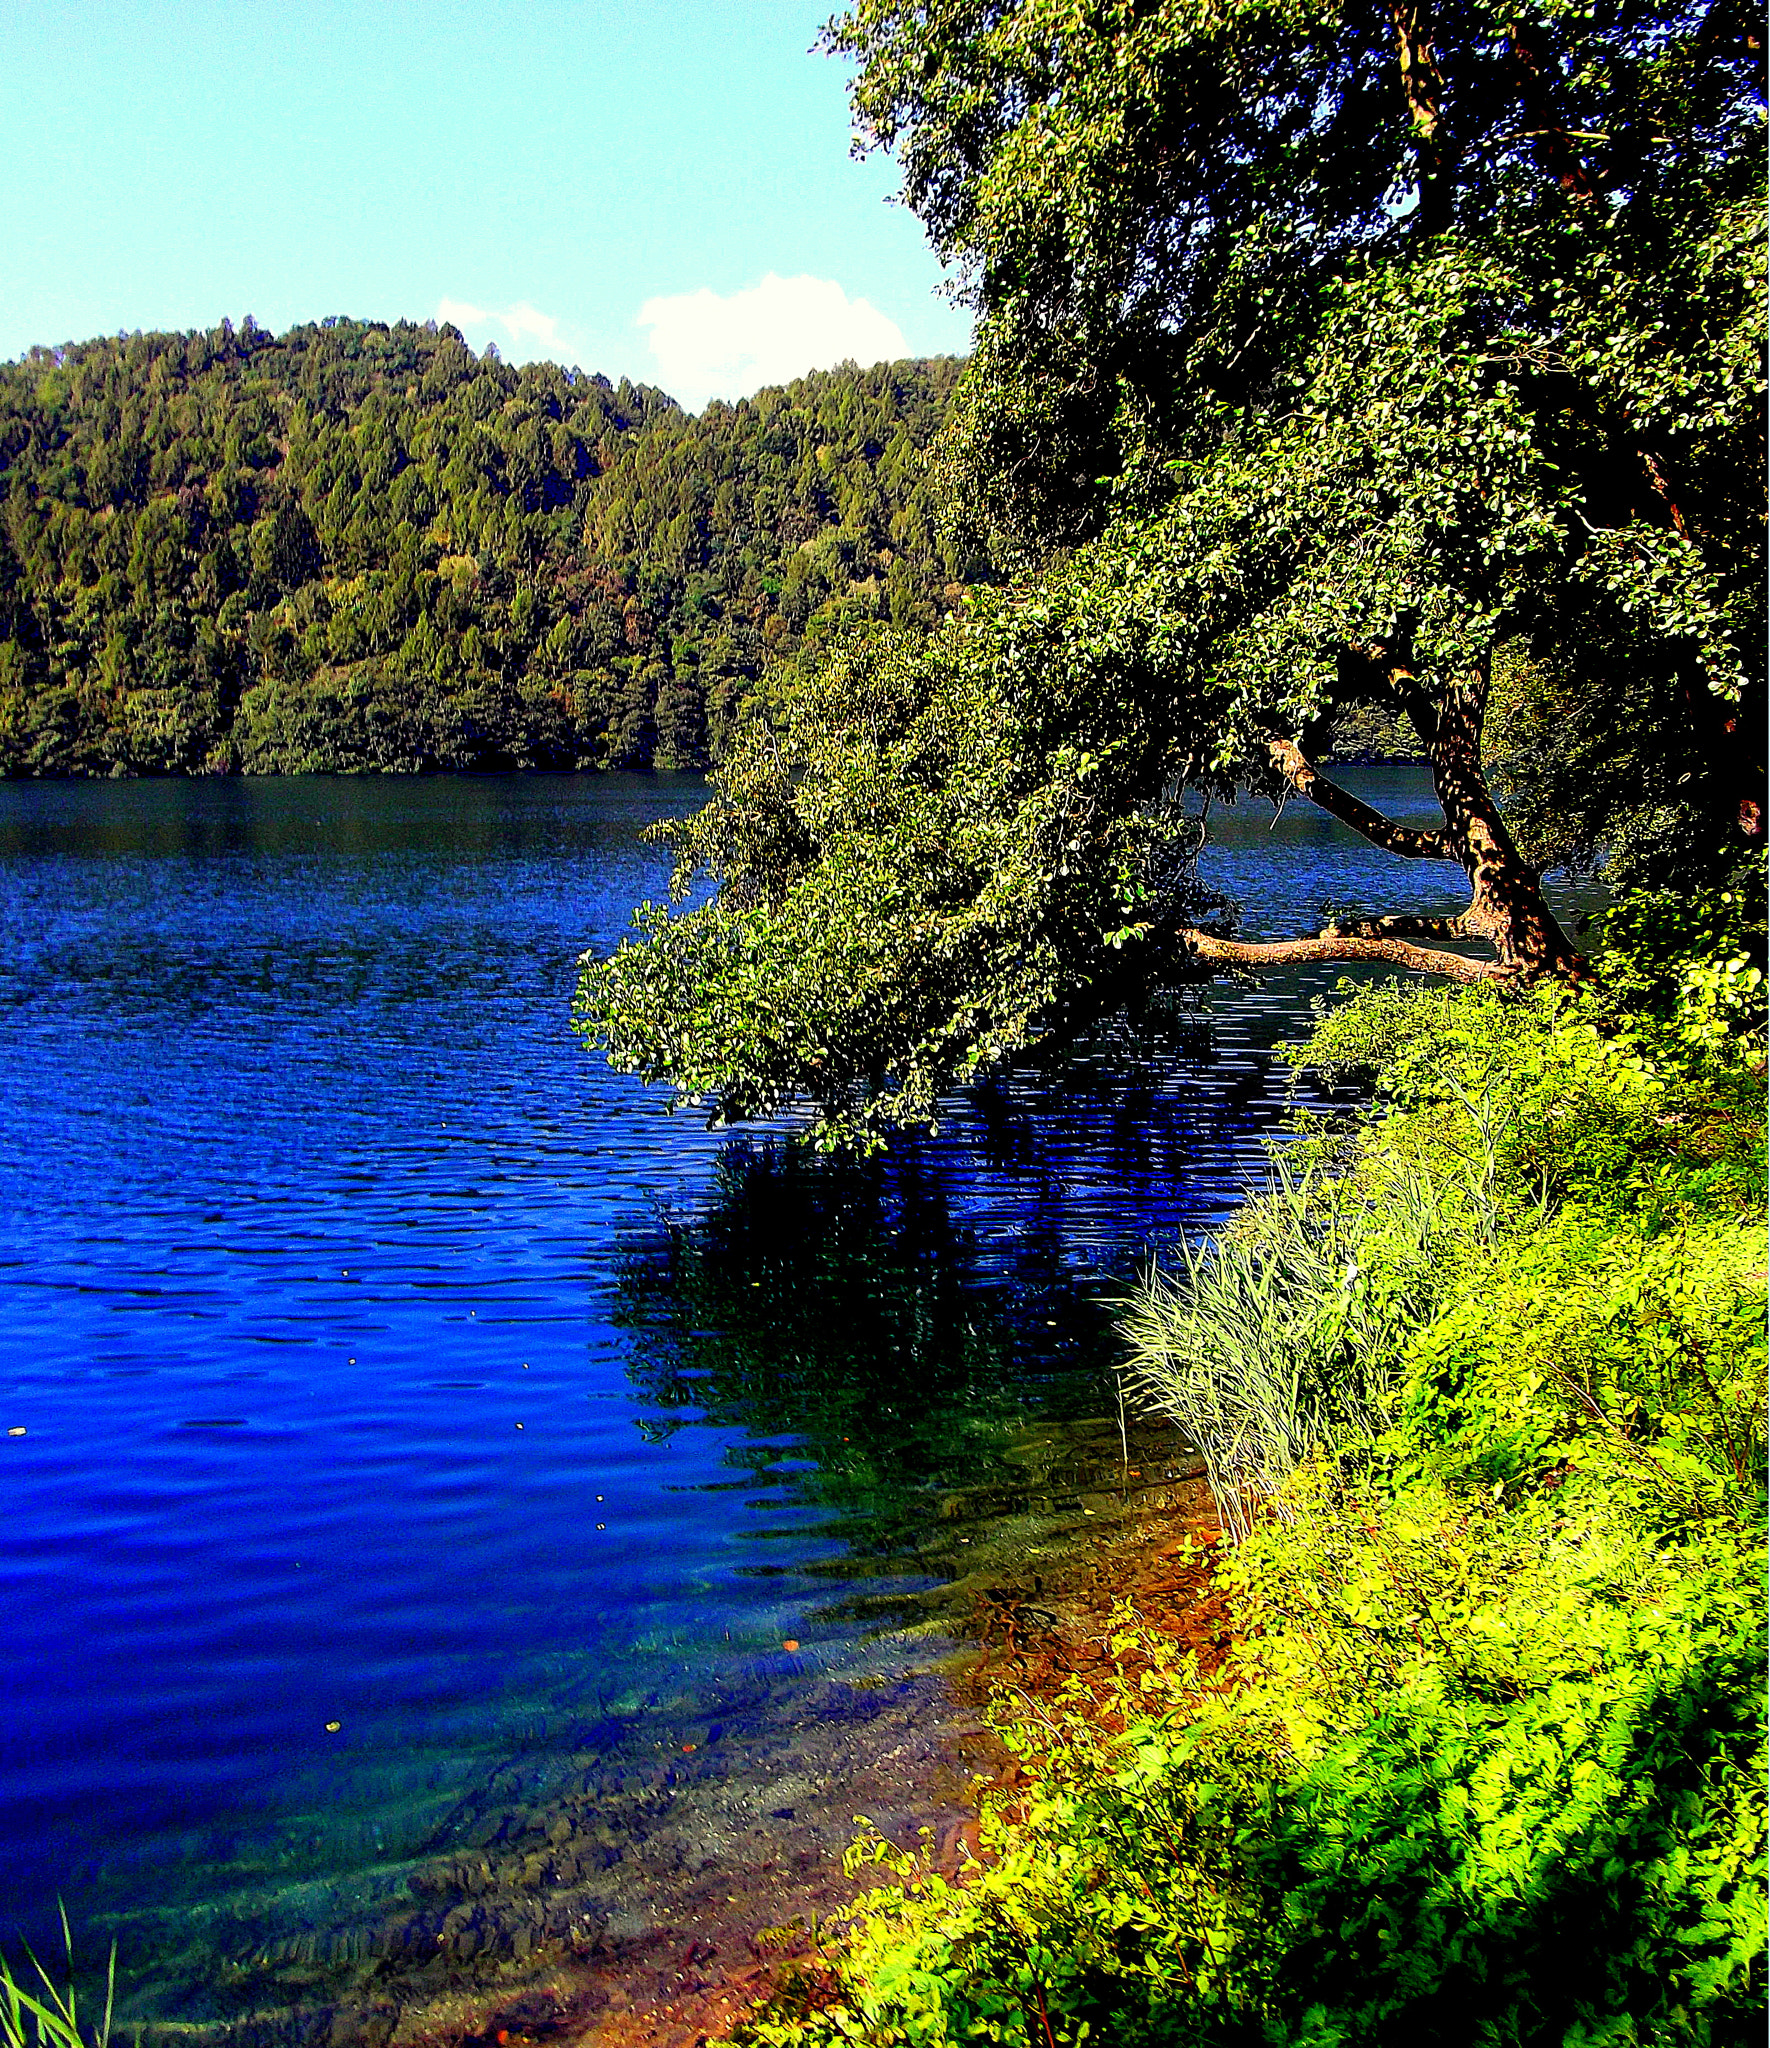 Fujifilm FinePix JX250 sample photo. La stupenda natura e il lago di levico terme. photography